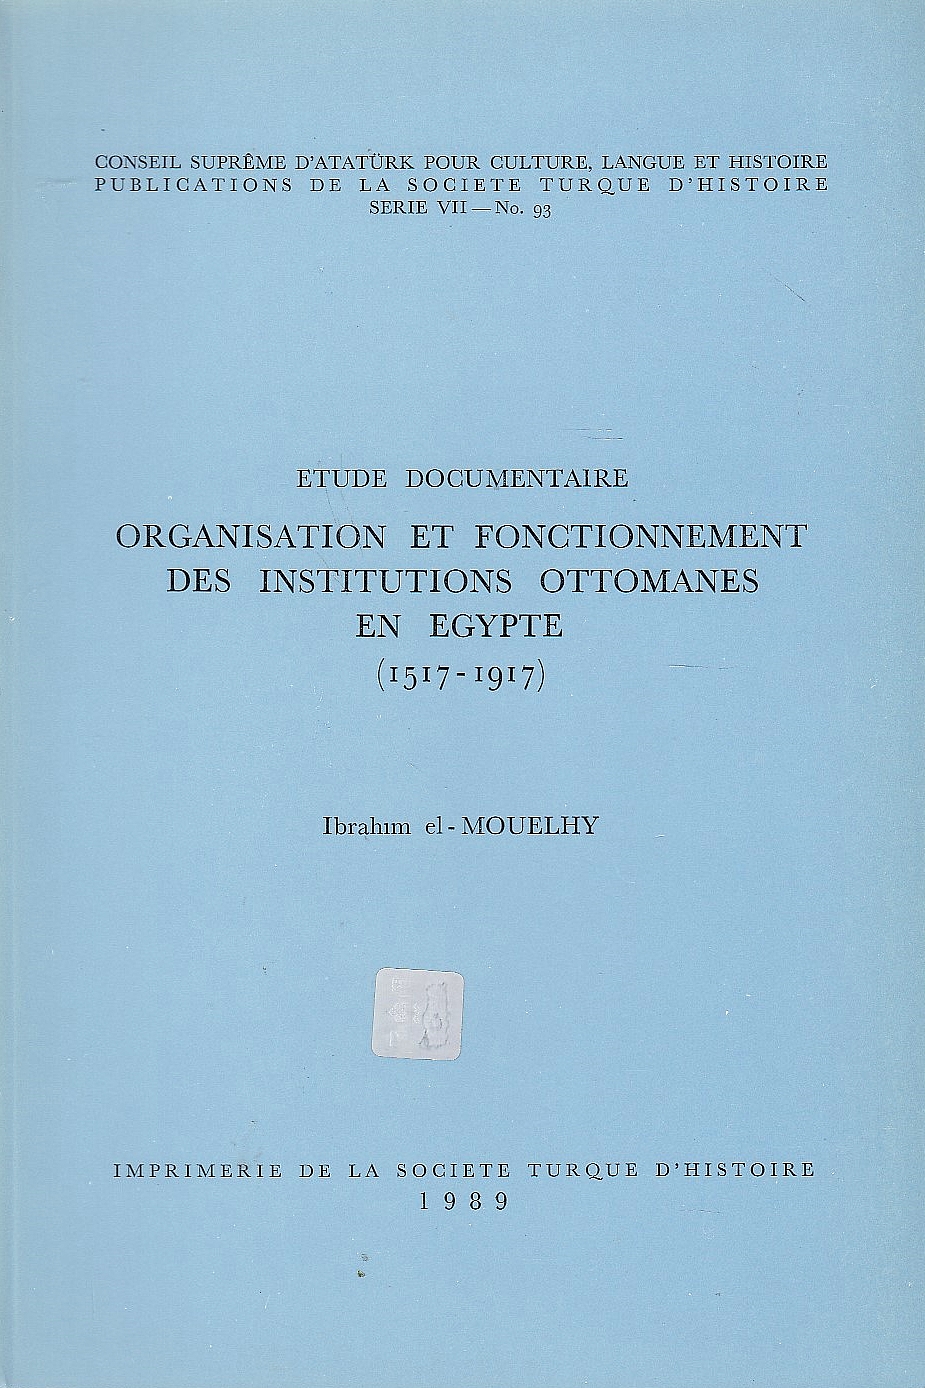 Organisation et Fonctionnement des Institutions Ottomanes en Egypte (1517-1917): etude documentaire.